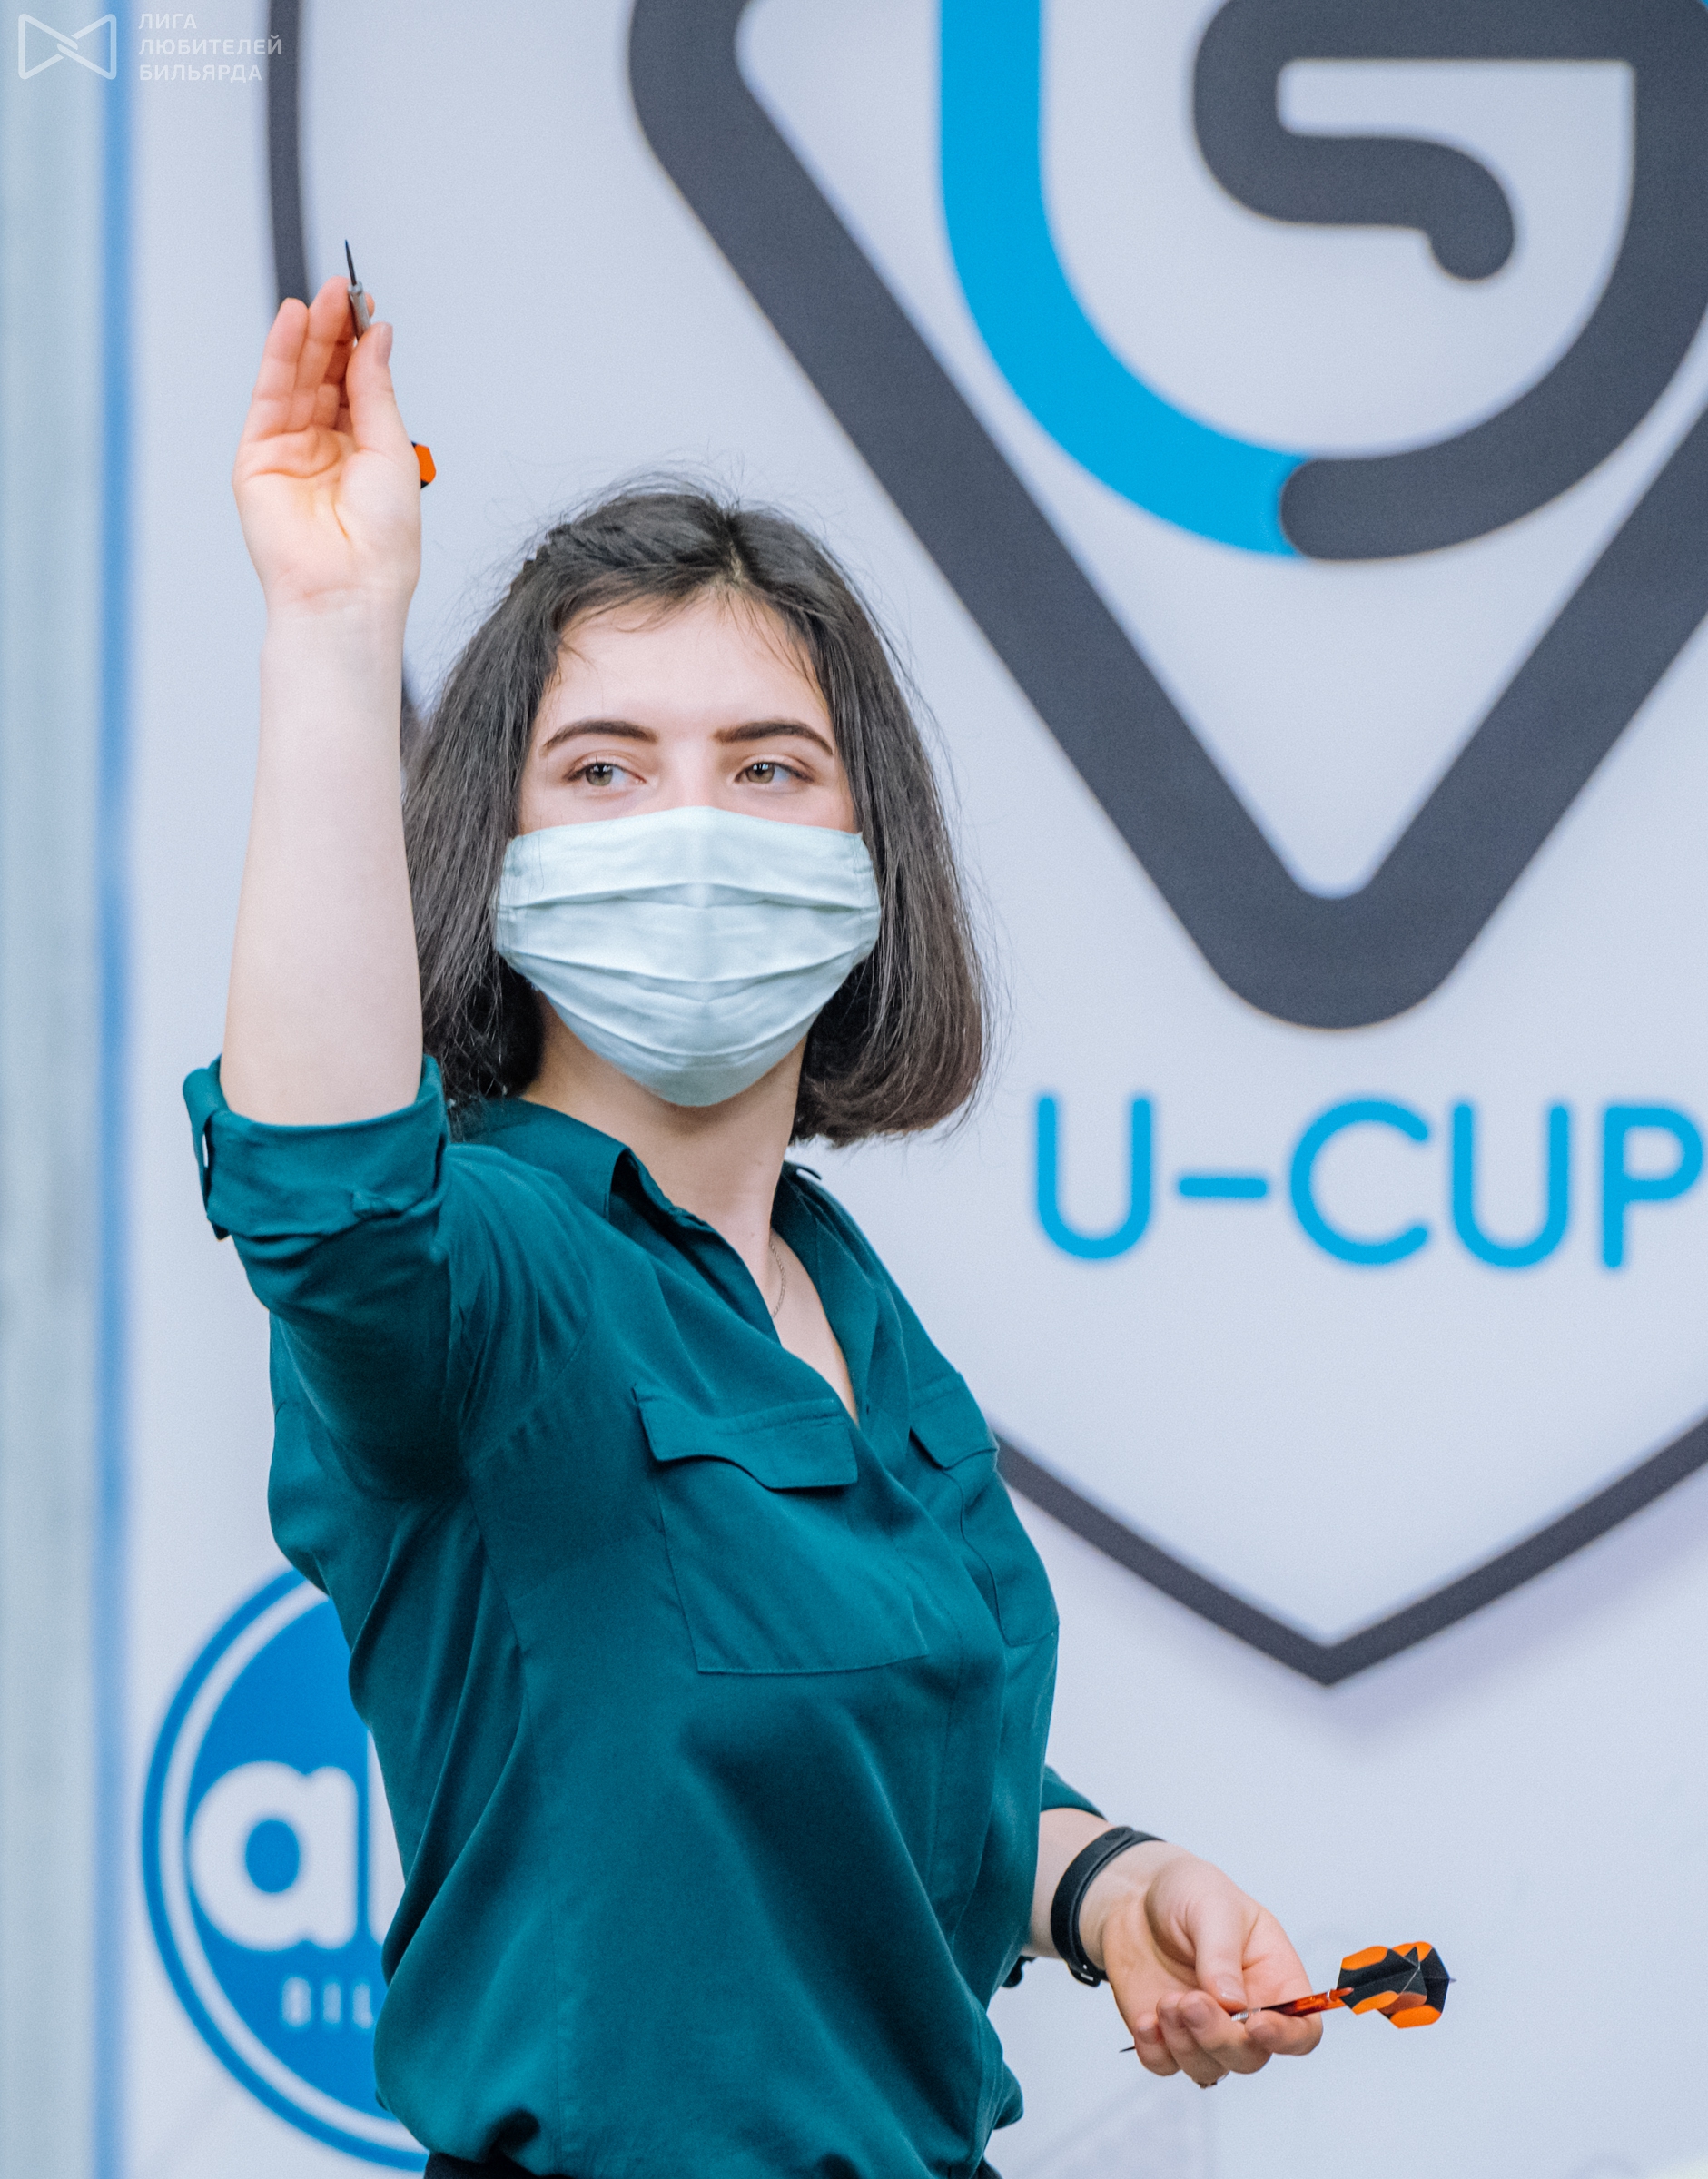 U cup